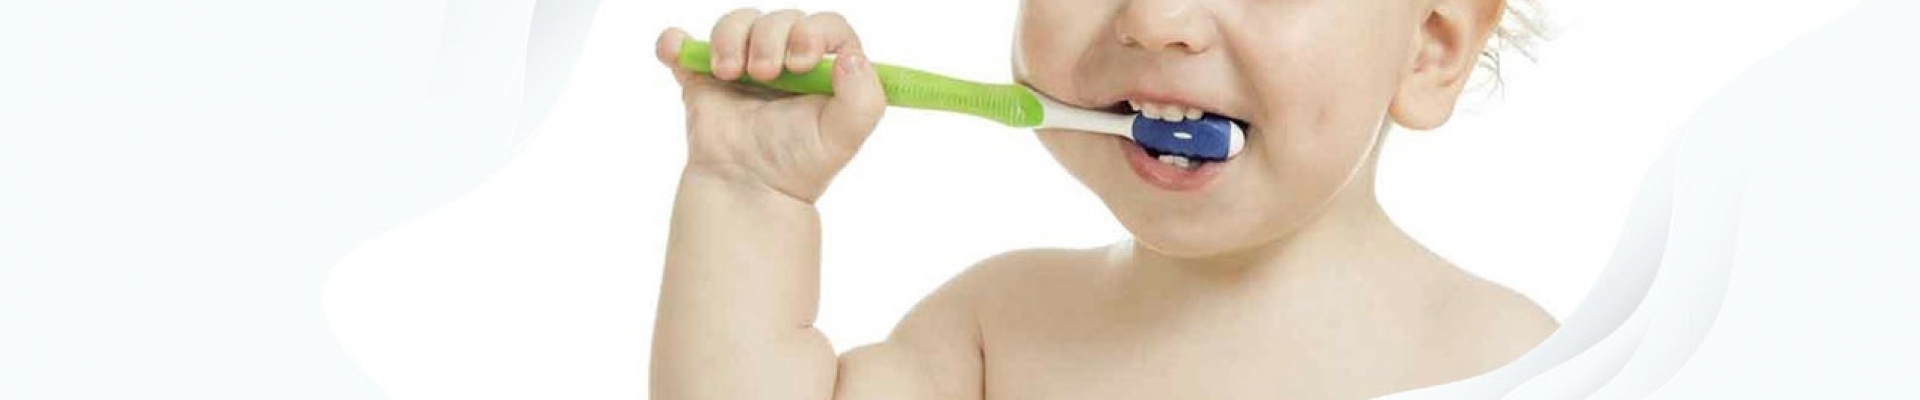 6 ошибок при чистке зубов